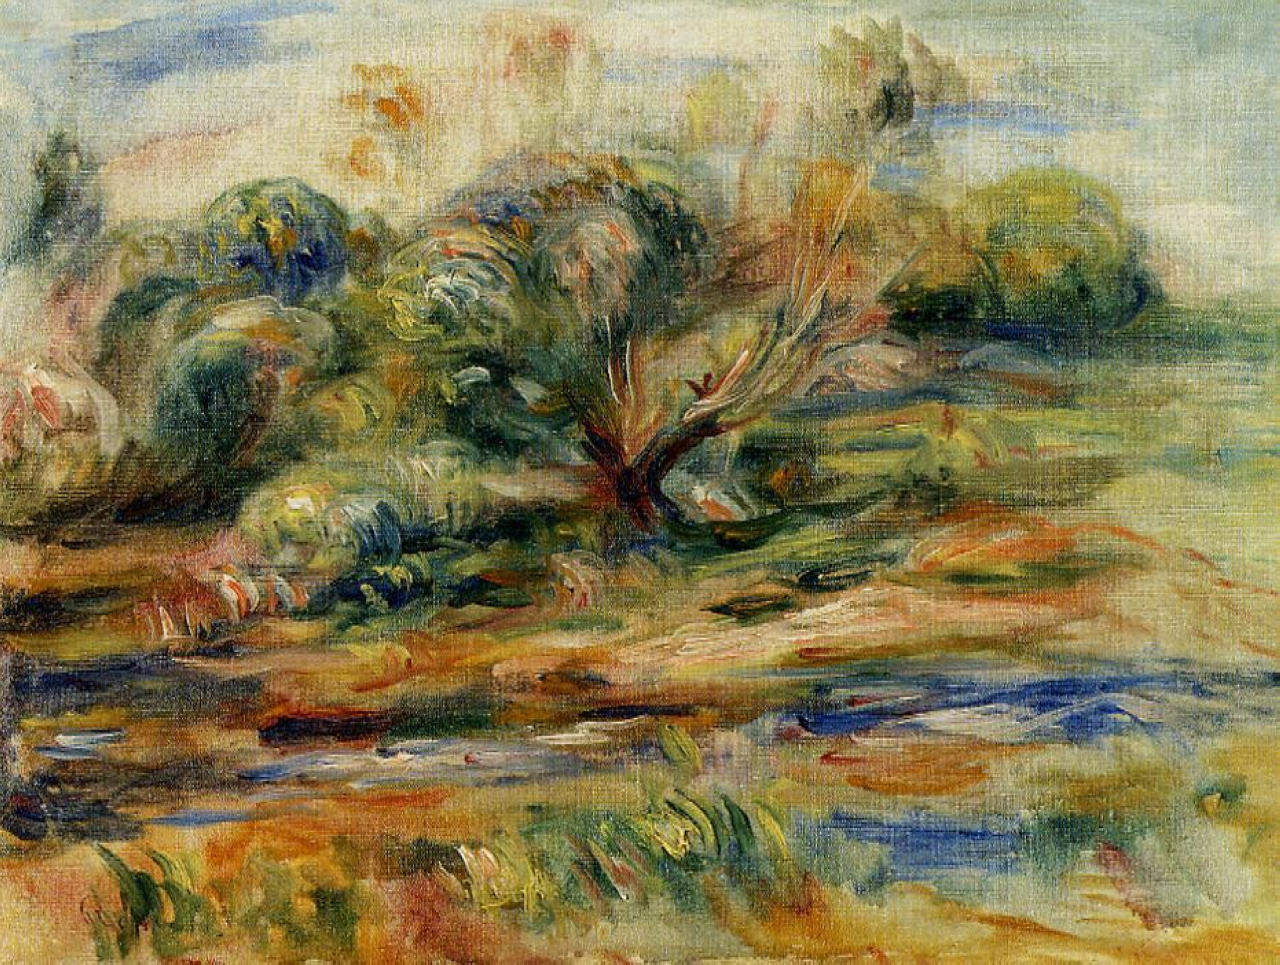 Pierre+Auguste+Renoir-1841-1-19 (524).jpg